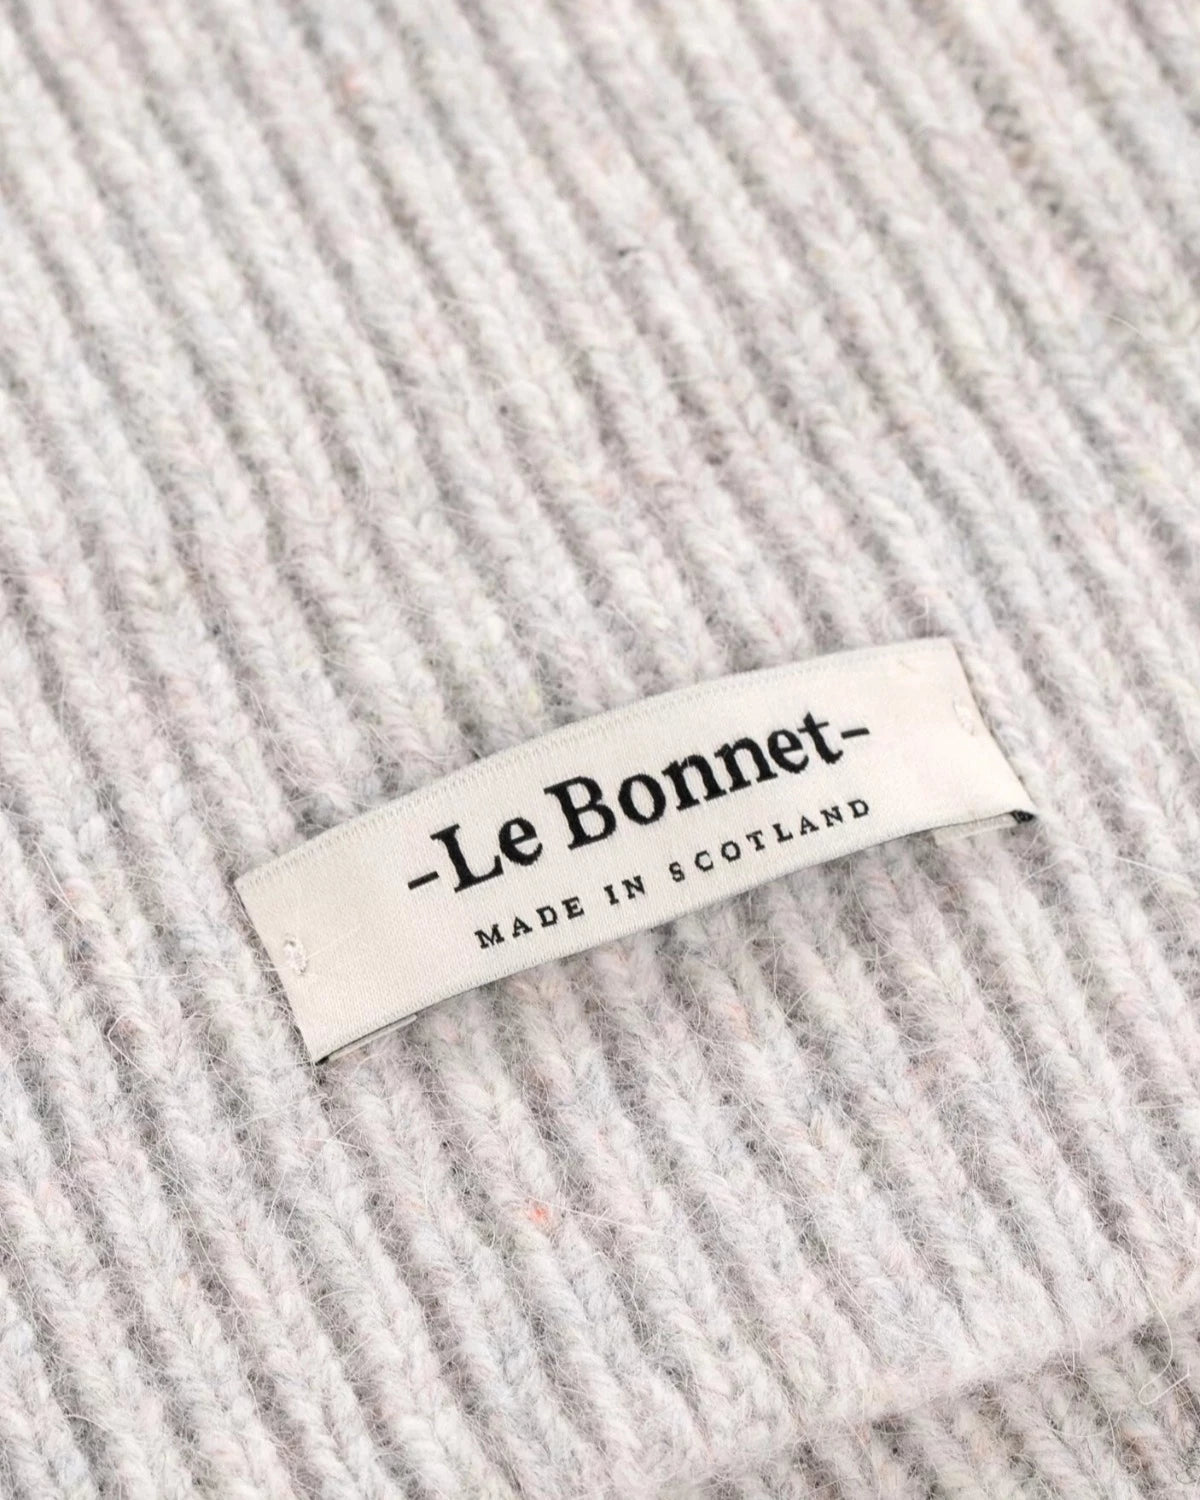 Le Bonnet Scarf Irridescent Scarfs & Gloves